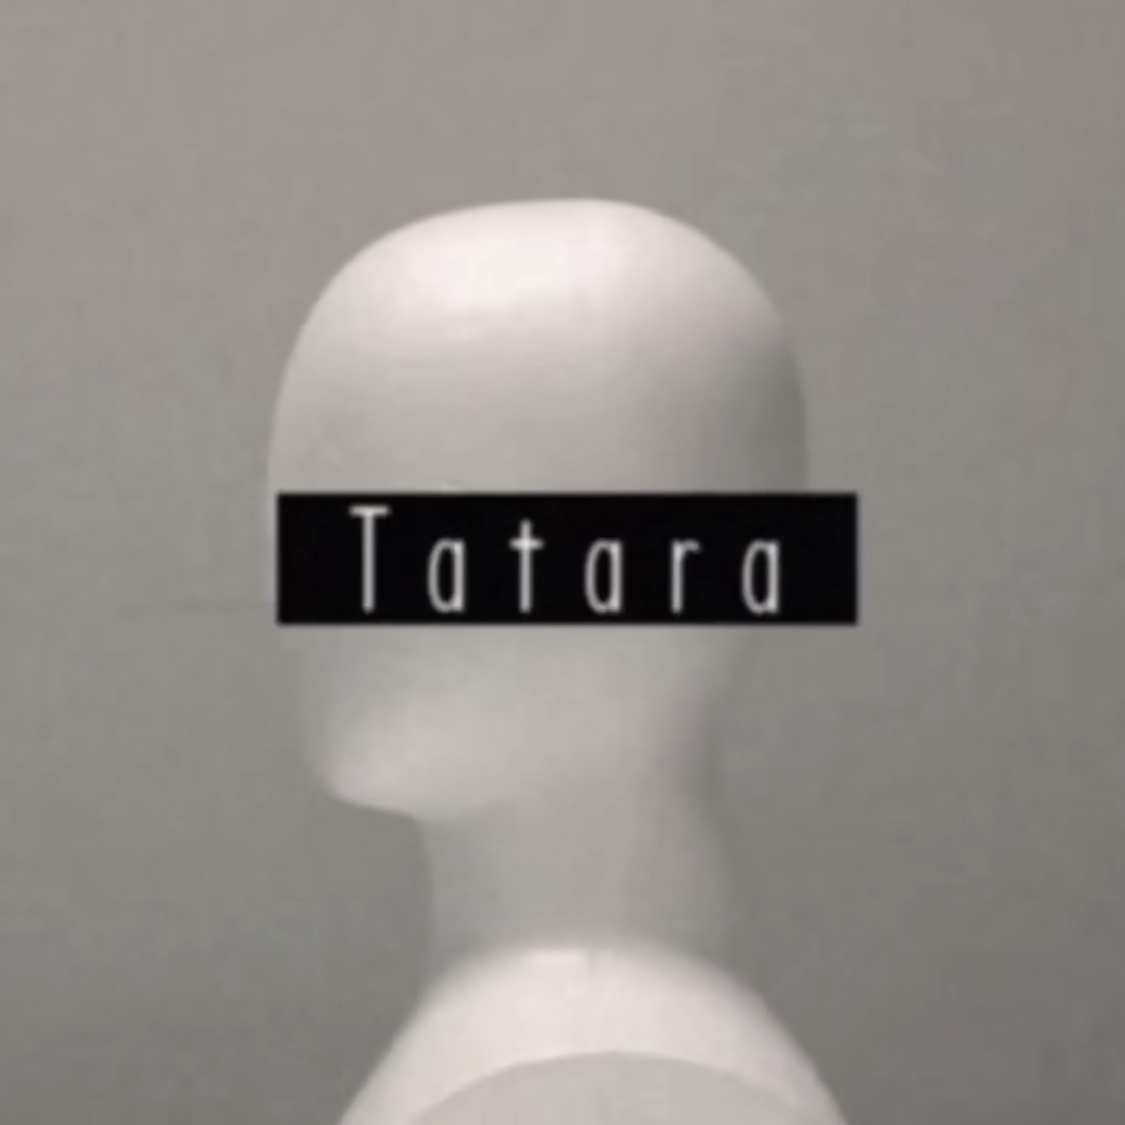 Tatara/タタラ（翻自 初音ミク）歌词 歌手Milk-专辑Tatara/タタラ-单曲《Tatara/タタラ（翻自 初音ミク）》LRC歌词下载